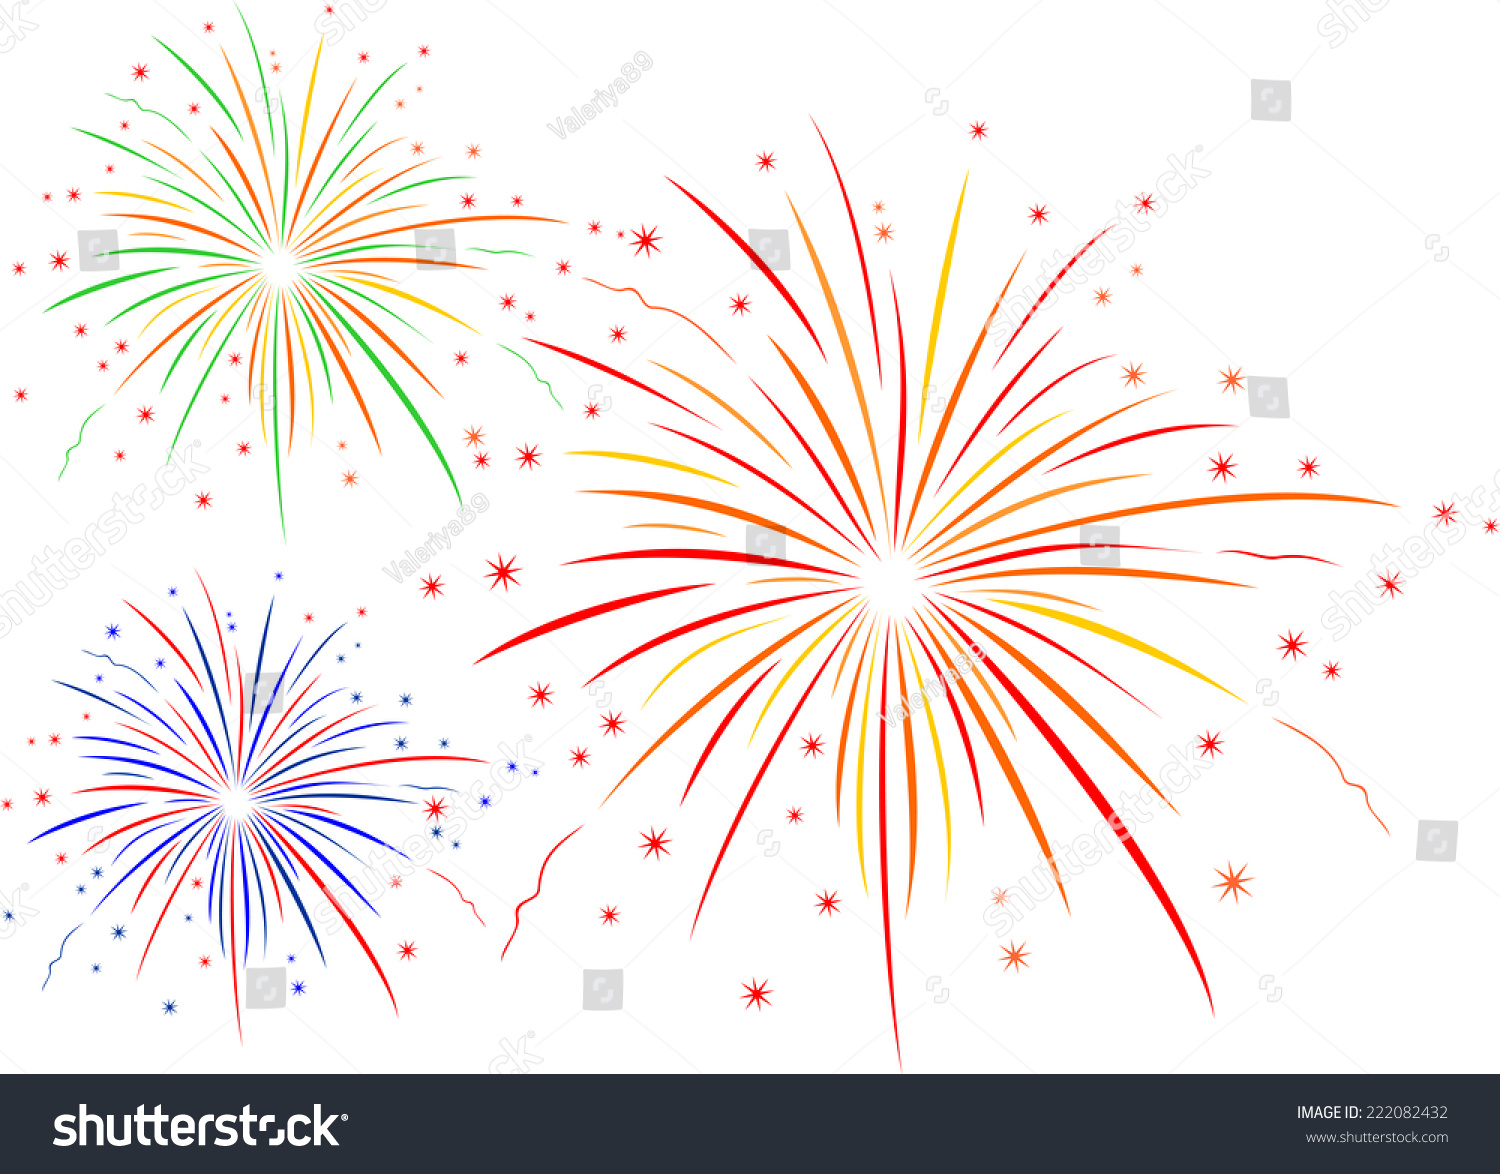 The Vector Illustration Of Fireworks - 222082432 : Shutterstock